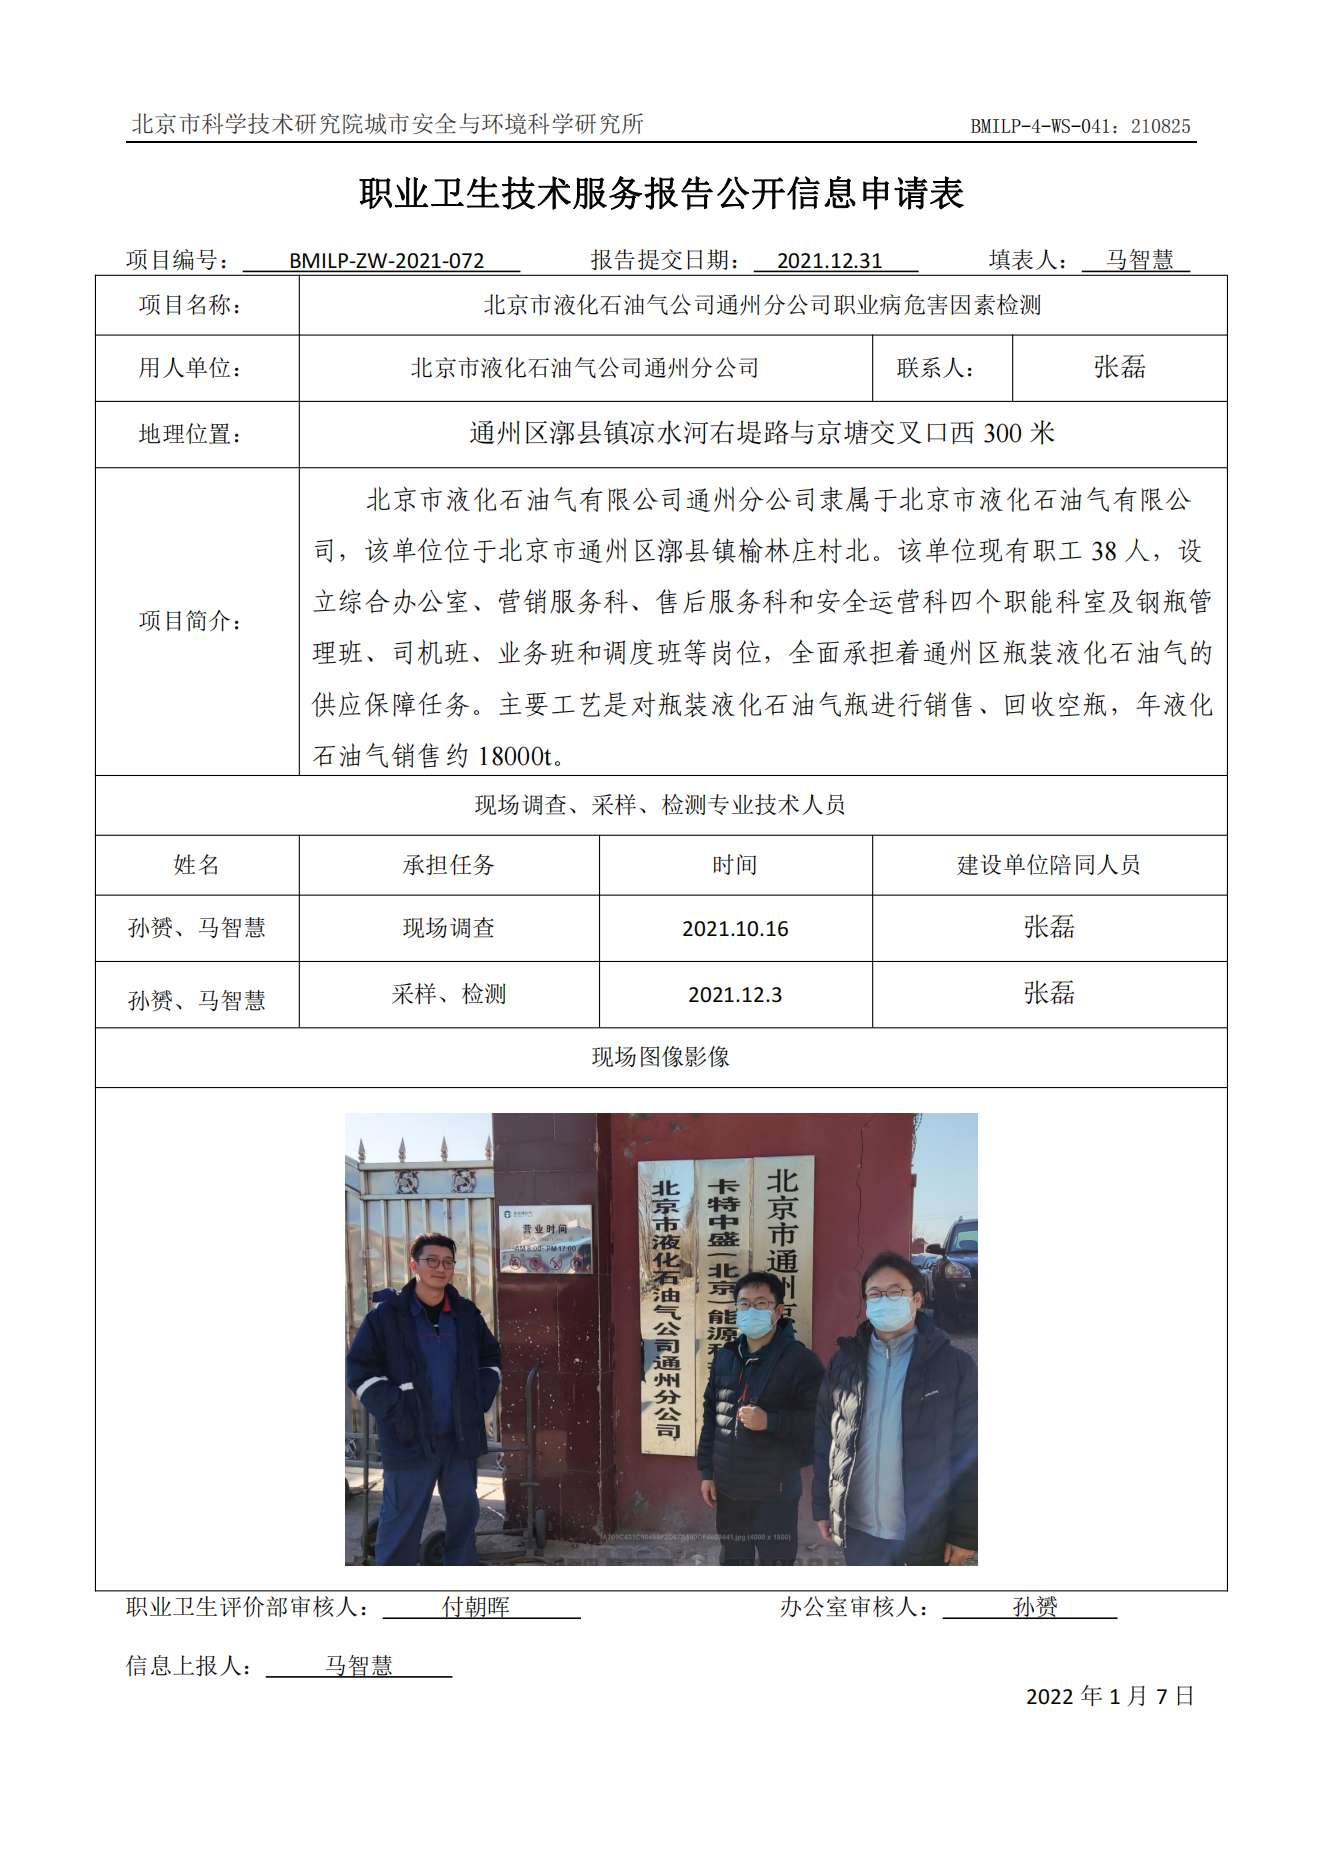 北京市液化石油气公司通州分公司职业病危害因素检测